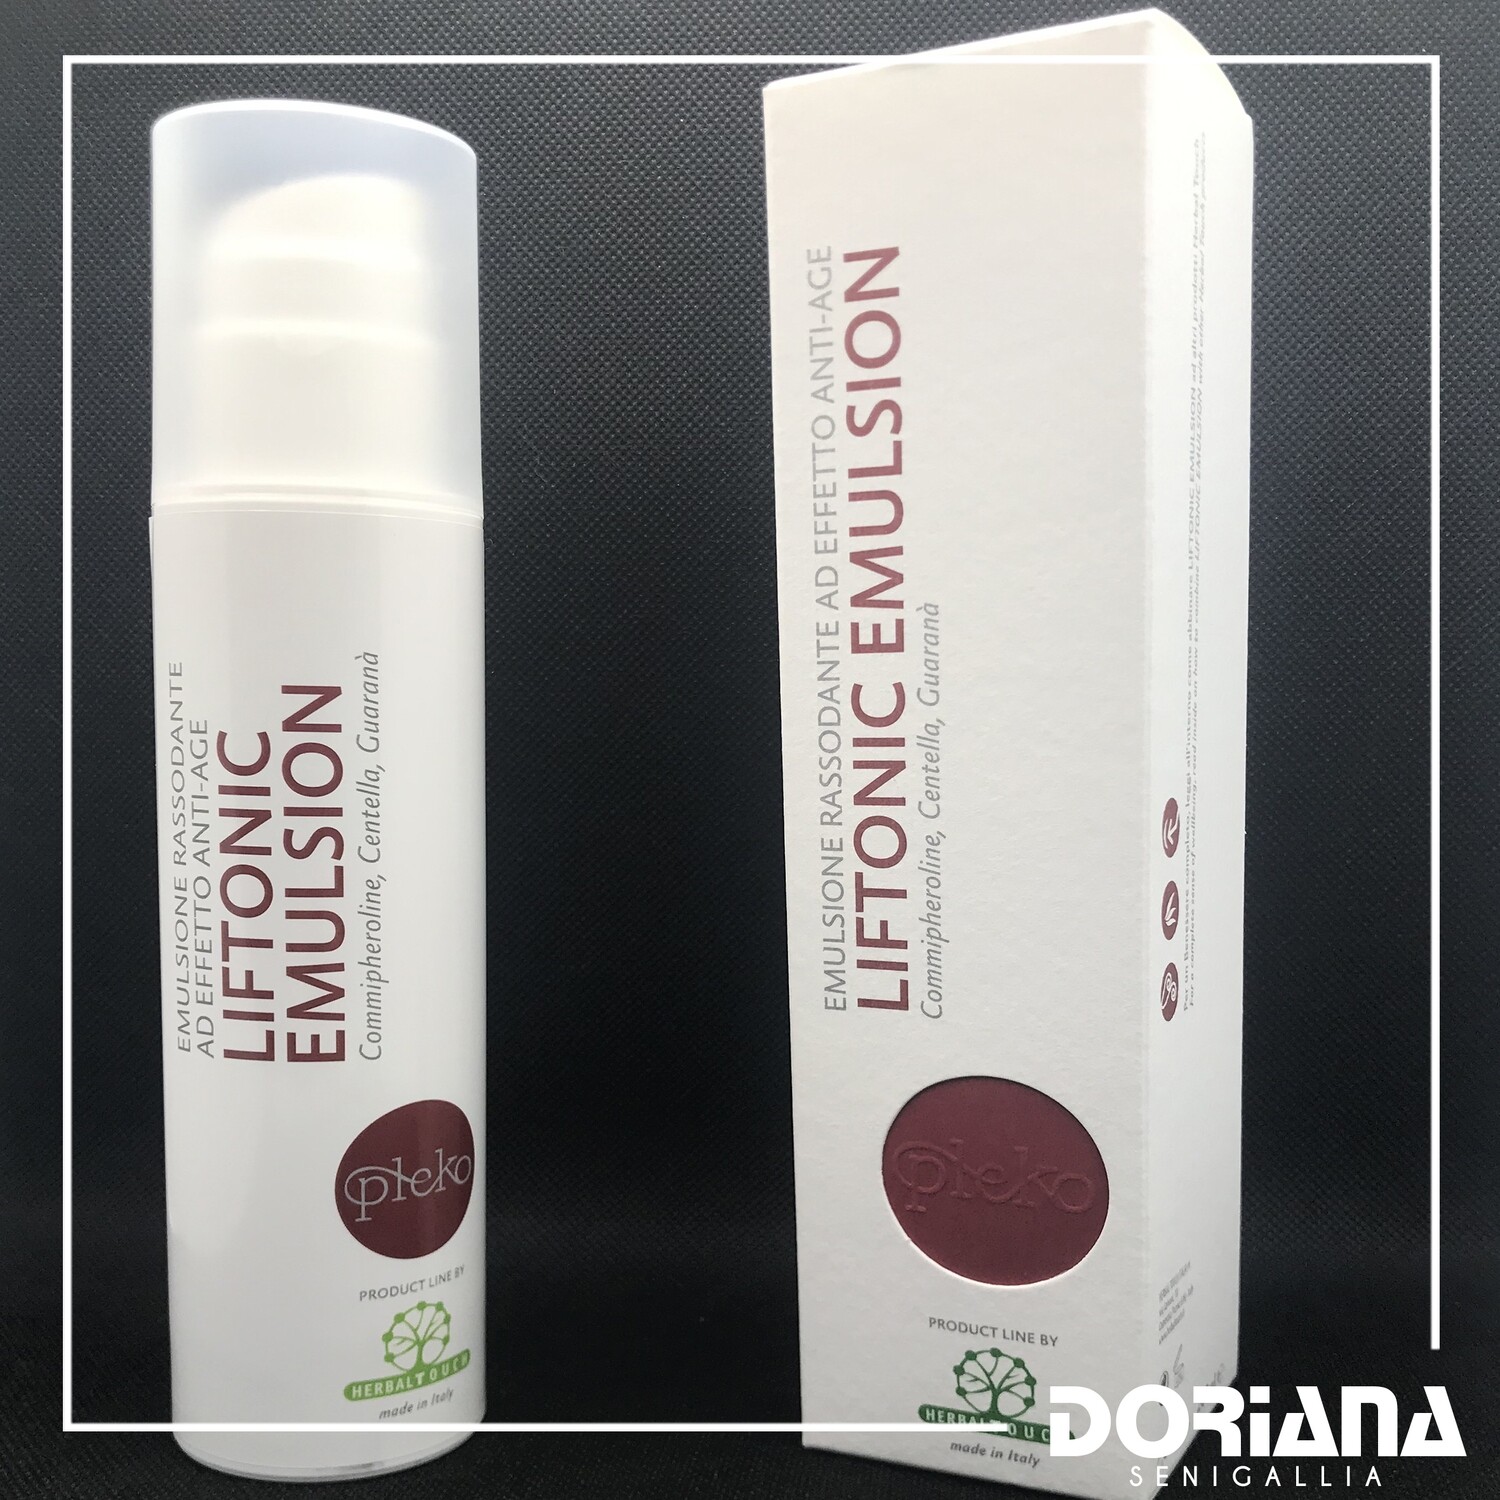 Liftonic Emulsion Pleko - Herbal Touch